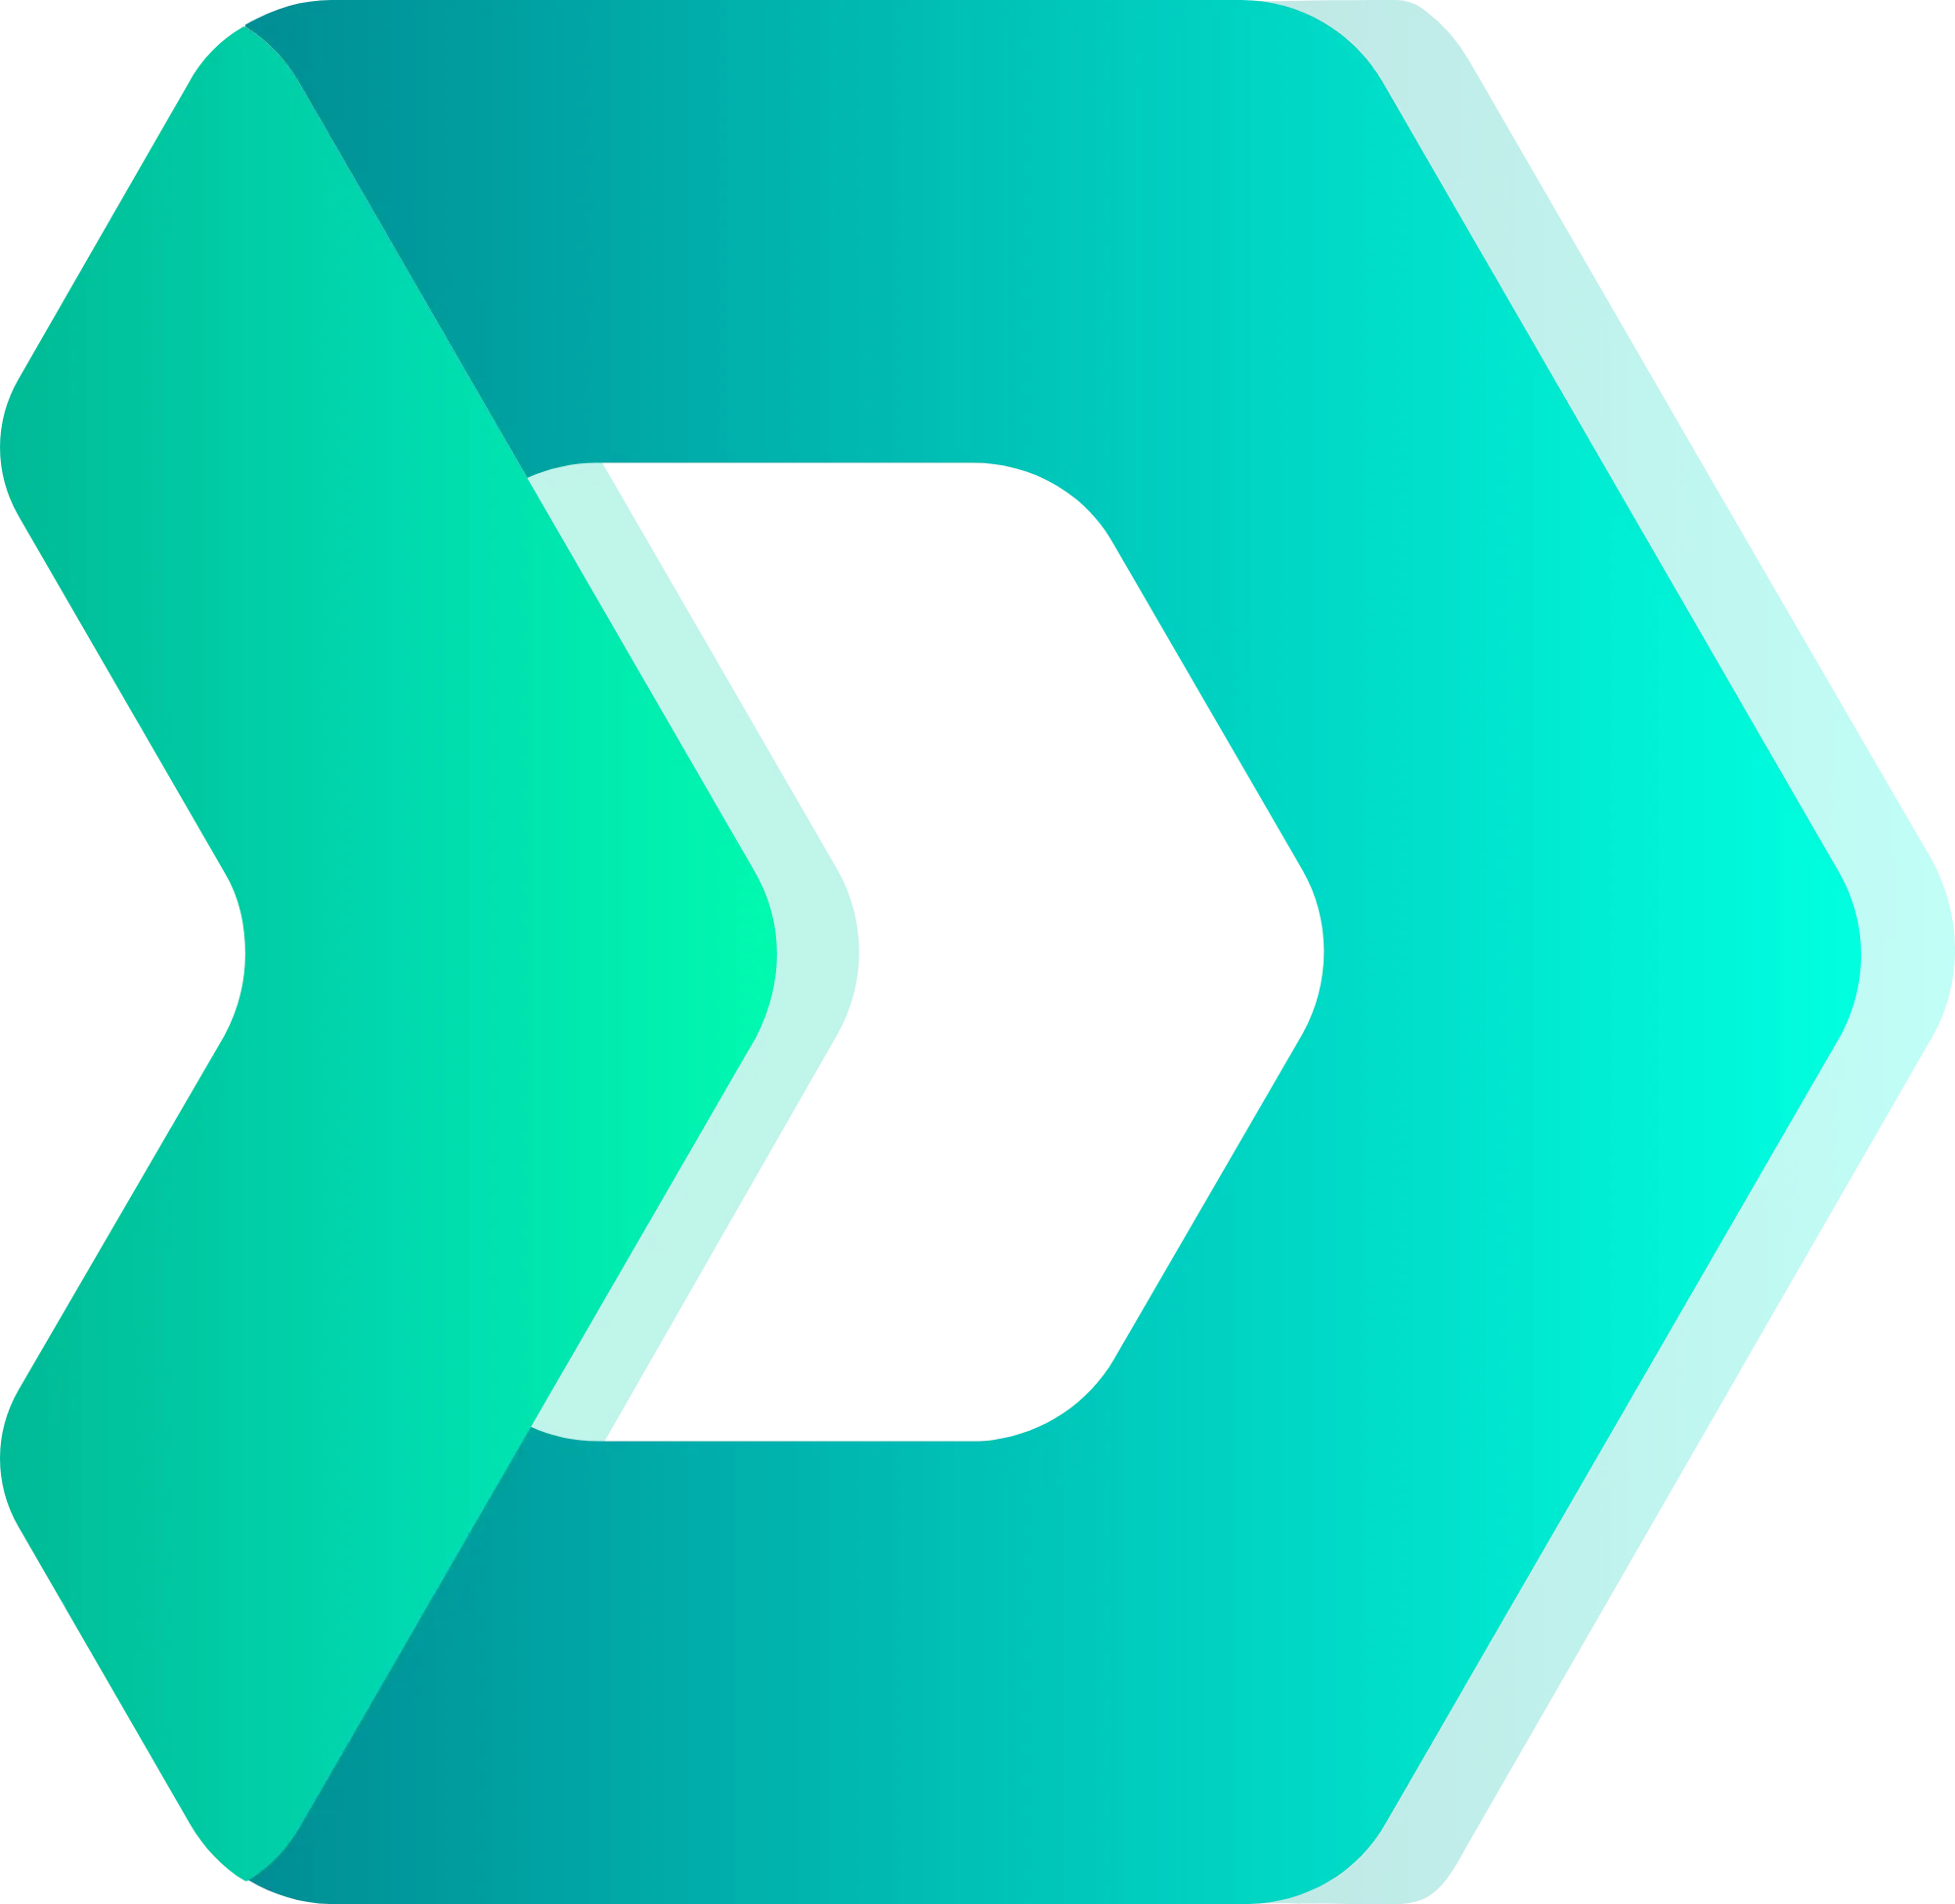 DMarket logo in svg format